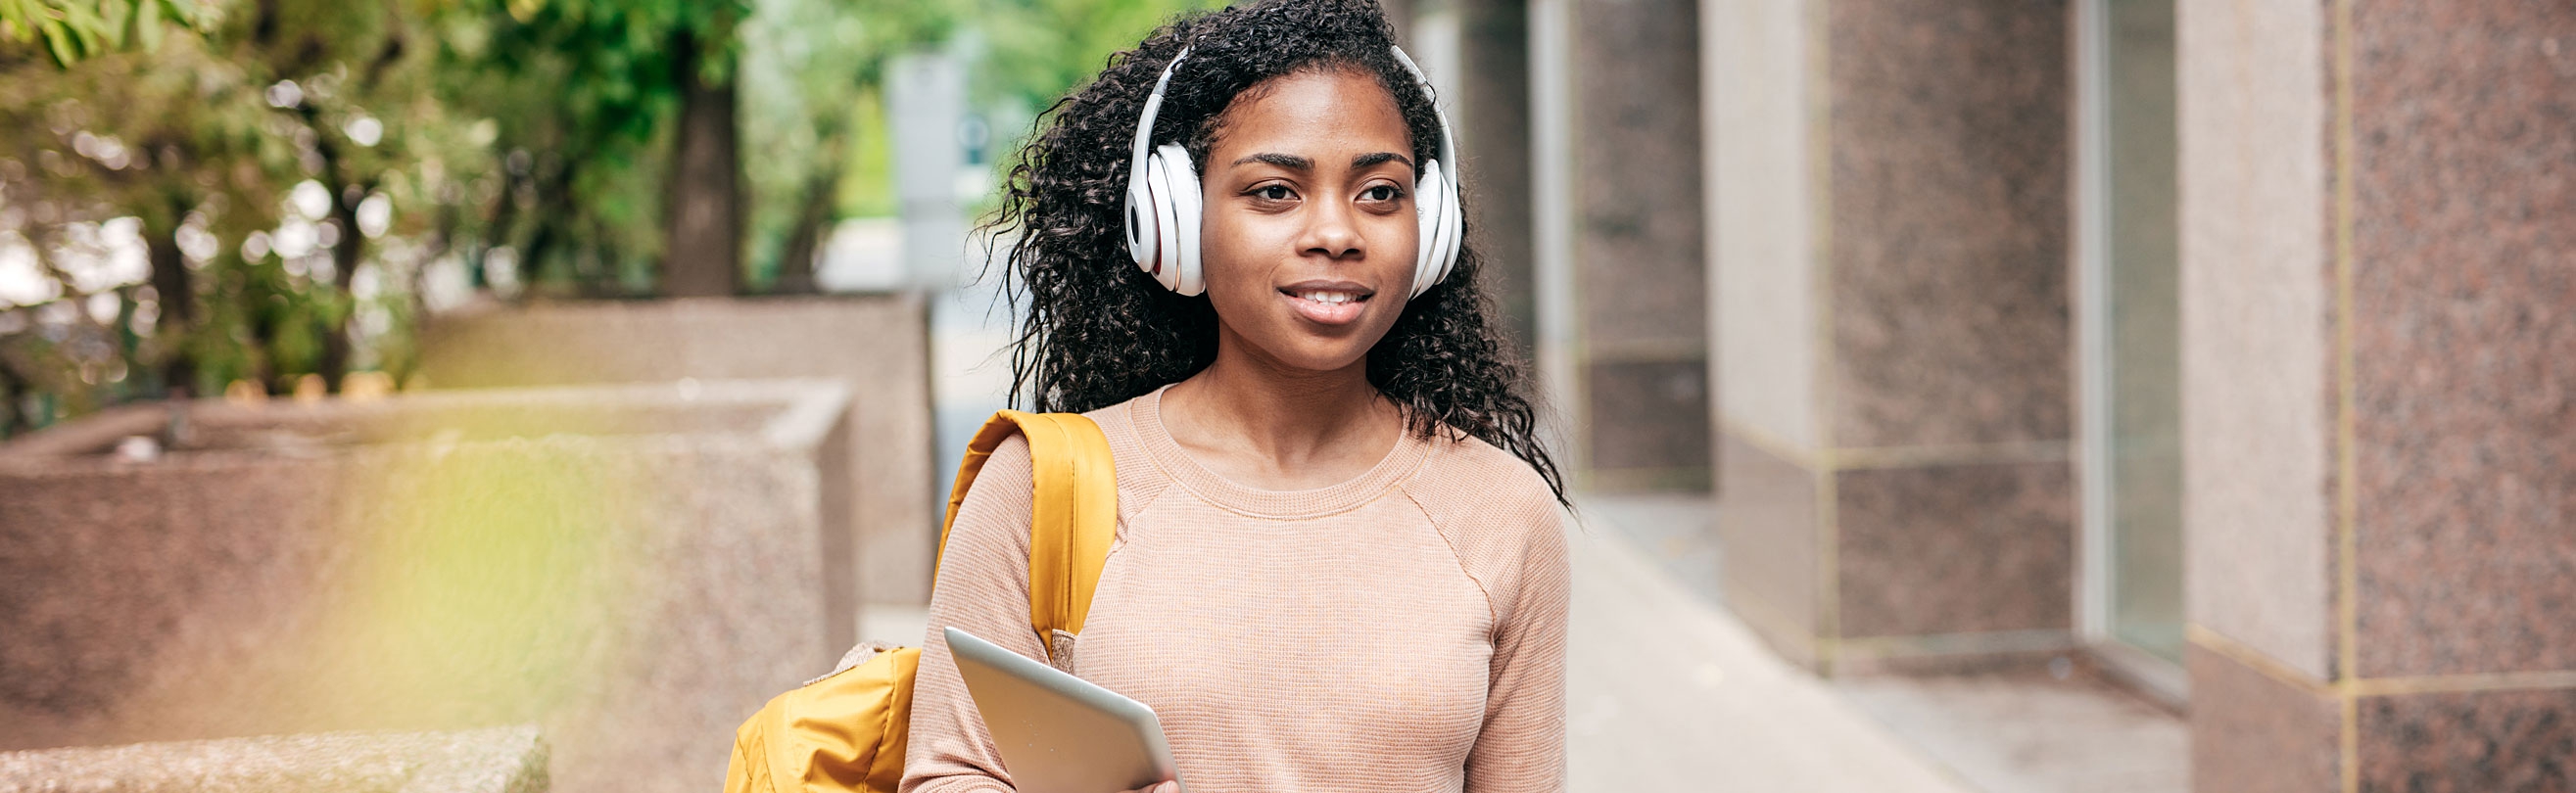 Student with Headphones